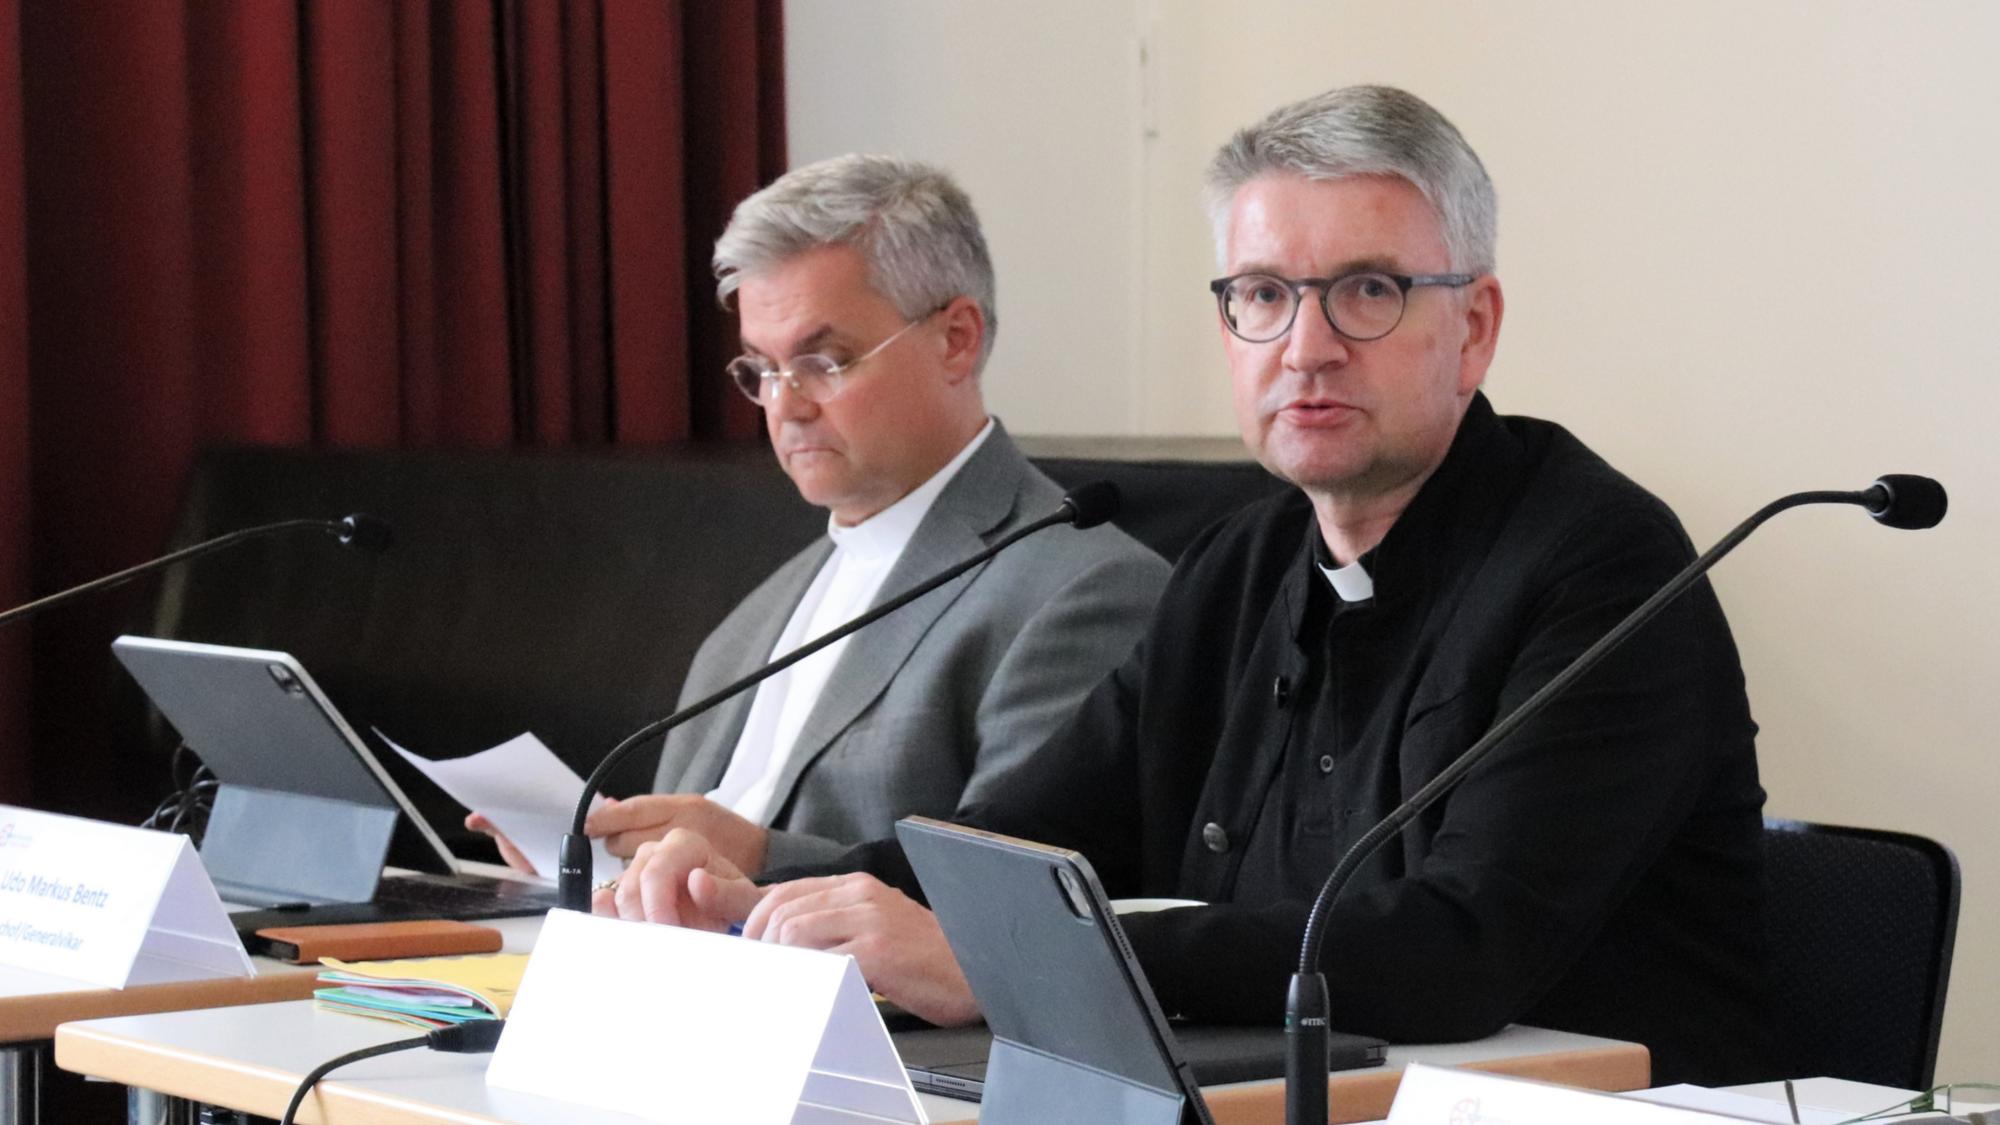 Bischof Peter Kohlgraf und Weihbischof Dr. Udo Markus Bentz (von rechts) bei der Sitzung des Diözesankirchensteuerrats